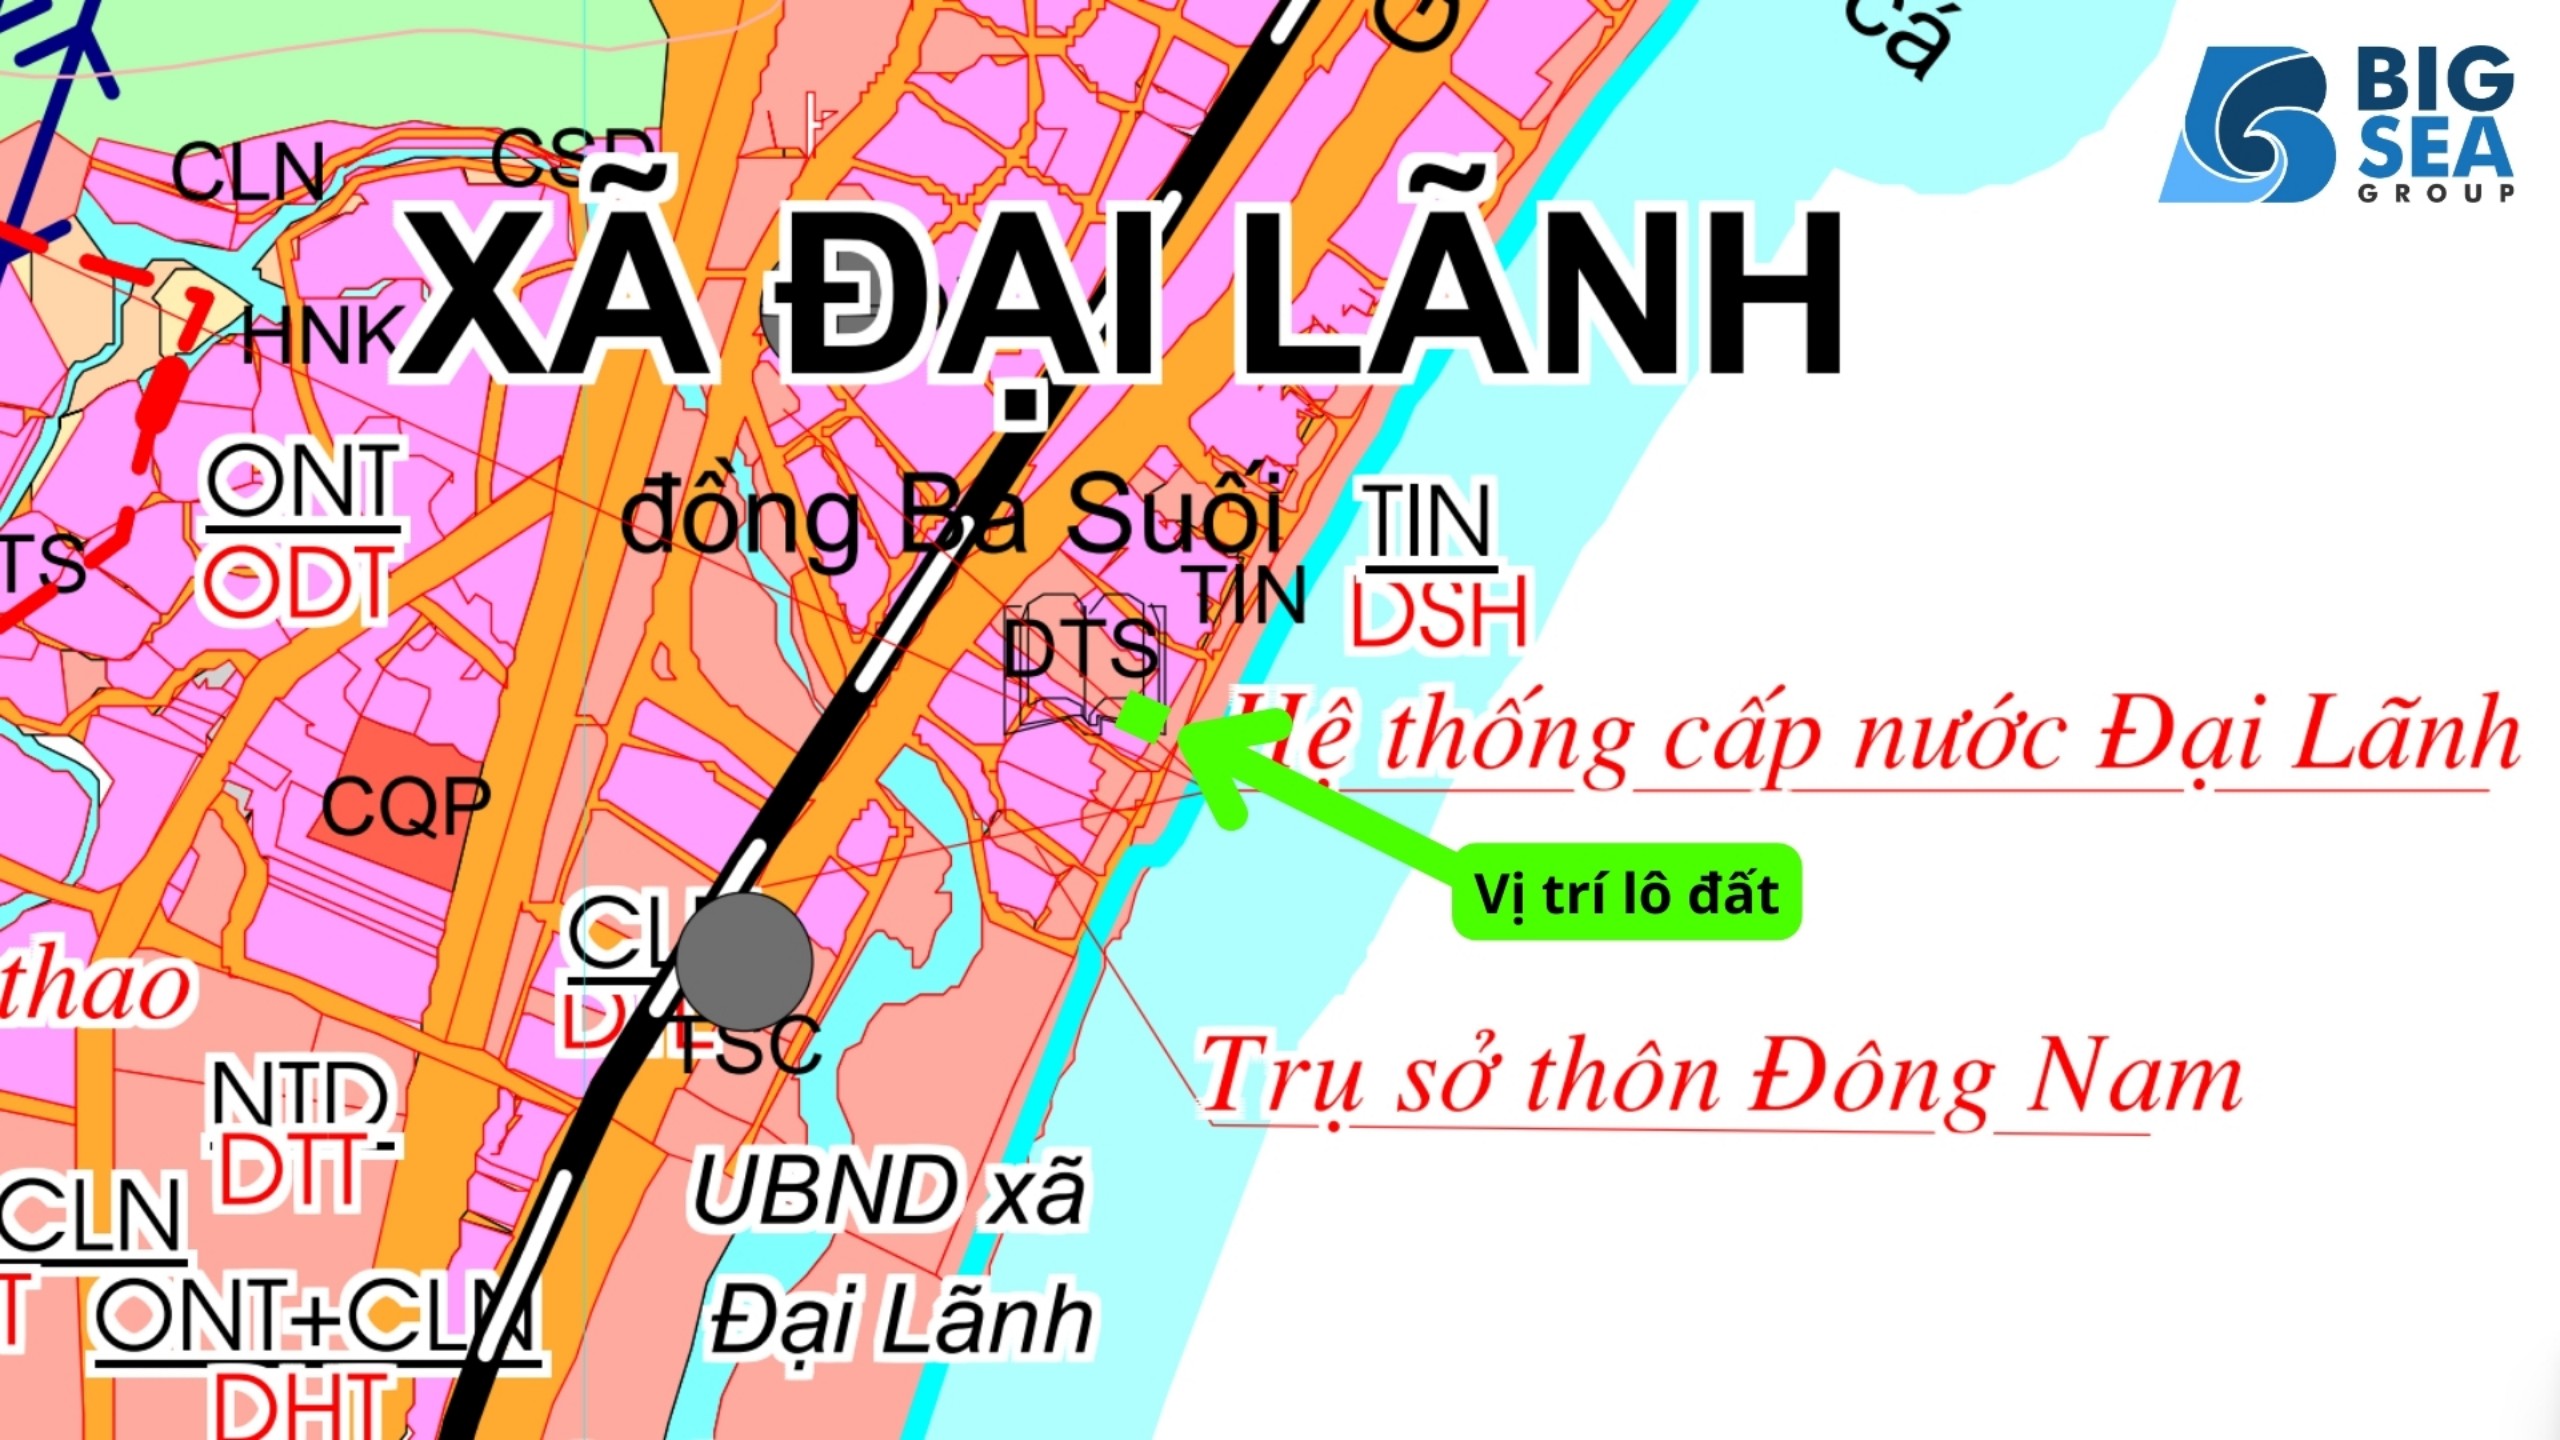 Đất nền tại Đại Lãnh, Vạn Ninh DT 200m2 nằm ngay mặt biển - Ảnh 3